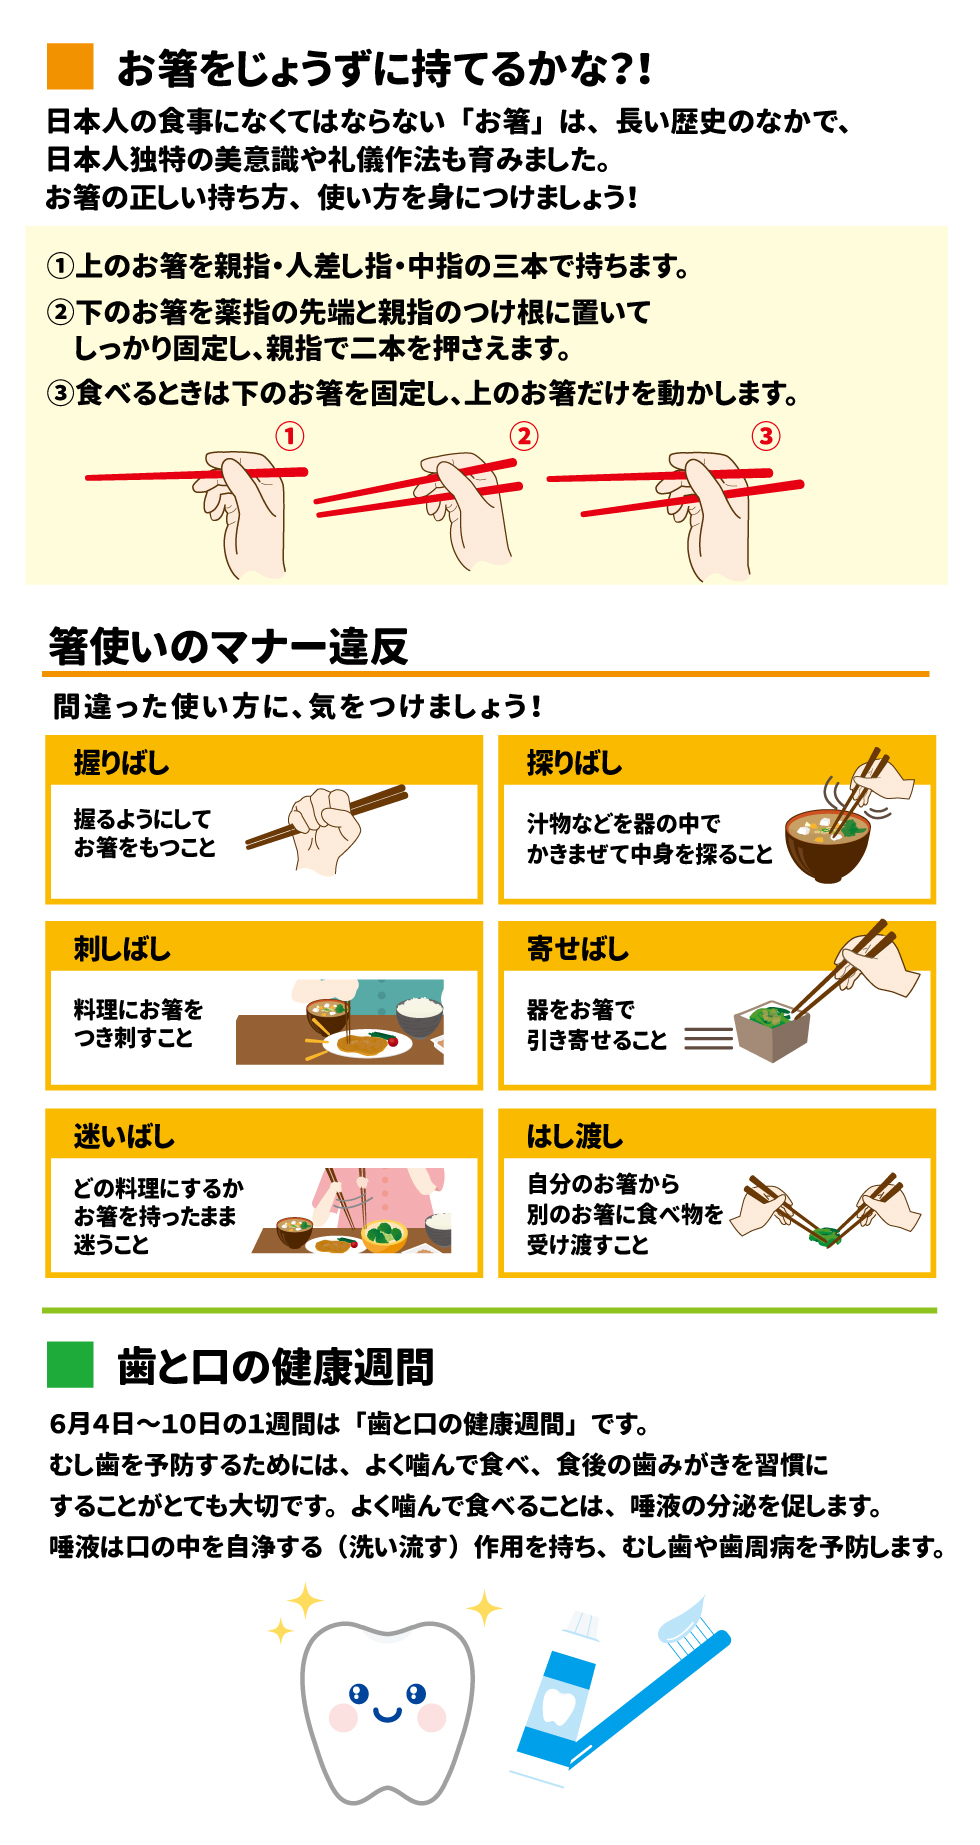  お箸をじょうずに持てるかな？！ 日本人の食事になくてはならない「お箸」は、長い歴史のなかで、日本人独特の美意識や礼儀作法も育みました。お箸の正しい持ち方、使い方を見につけましょう！ ①上のお箸を親指・人指し指・中指の三本で持ちます。 ②下のお箸を薬指の先端と親指のつけ根に置いてしっかり固定し、親指で二本を押さえます。 ③食べるときは下のお箸を固定し、上のお箸だけを動かします。  箸使いのマナー違反 間違った使い方に、気をつけましょう！ 握りばし　握るようにしてお箸をもつこと 刺しばし　料理にお箸をつき刺すこと 迷いばし　どの料理にするかお箸を持ったまま迷うこと 探りばし　汁物などを器の中でかきまぜて中身を探ること 寄せばし　器をお箸で引き寄せること はし渡し　自分のお箸から別のお箸に食べ物を受け渡すこと  歯と口の健康週間 6月4日～10日の1週間は「歯と口の健康週間」です。むし歯を予防するためには、よく噛んで食べ、食後の歯磨きを習慣にすることがとても大切です。よく噛んで食べることは、唾液の分泌を促します。 唾液は口の中を自浄する(洗い流す)作用を持ち、むし歯や歯周病を予防します。